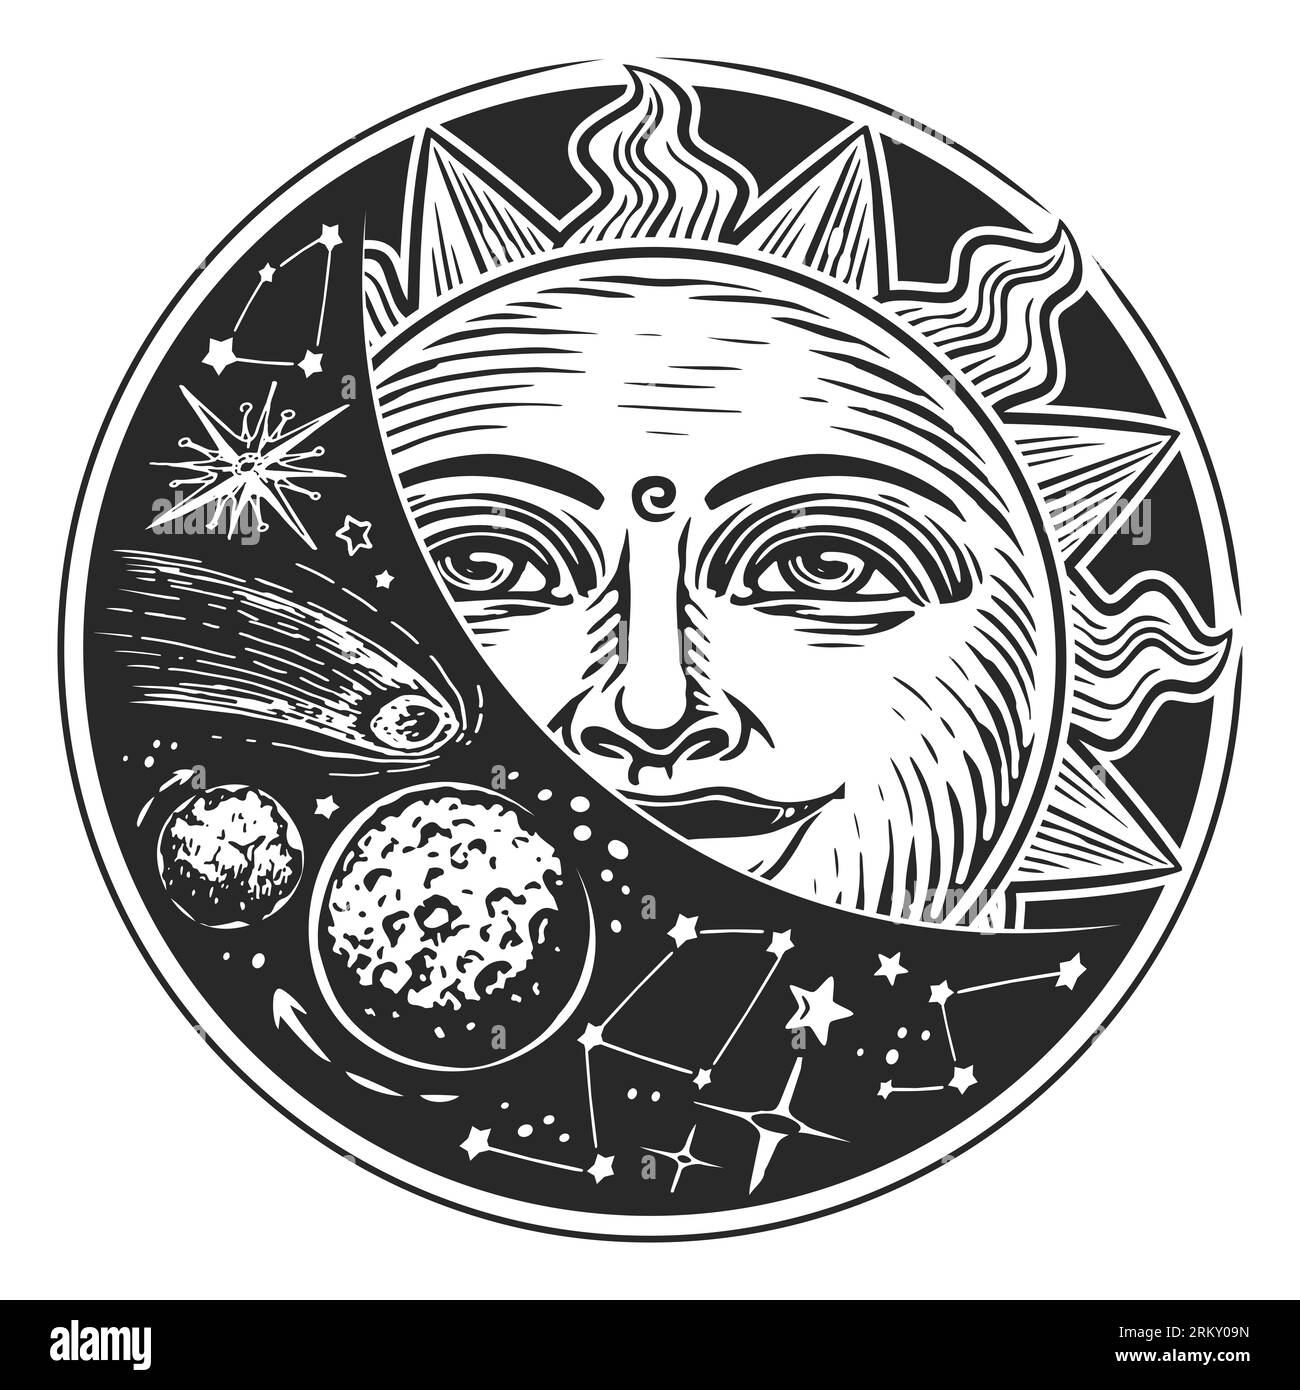 Soleil et étoiles dans l'espace. Concept astrologique. illustration dans le style de gravure vintage Banque D'Images